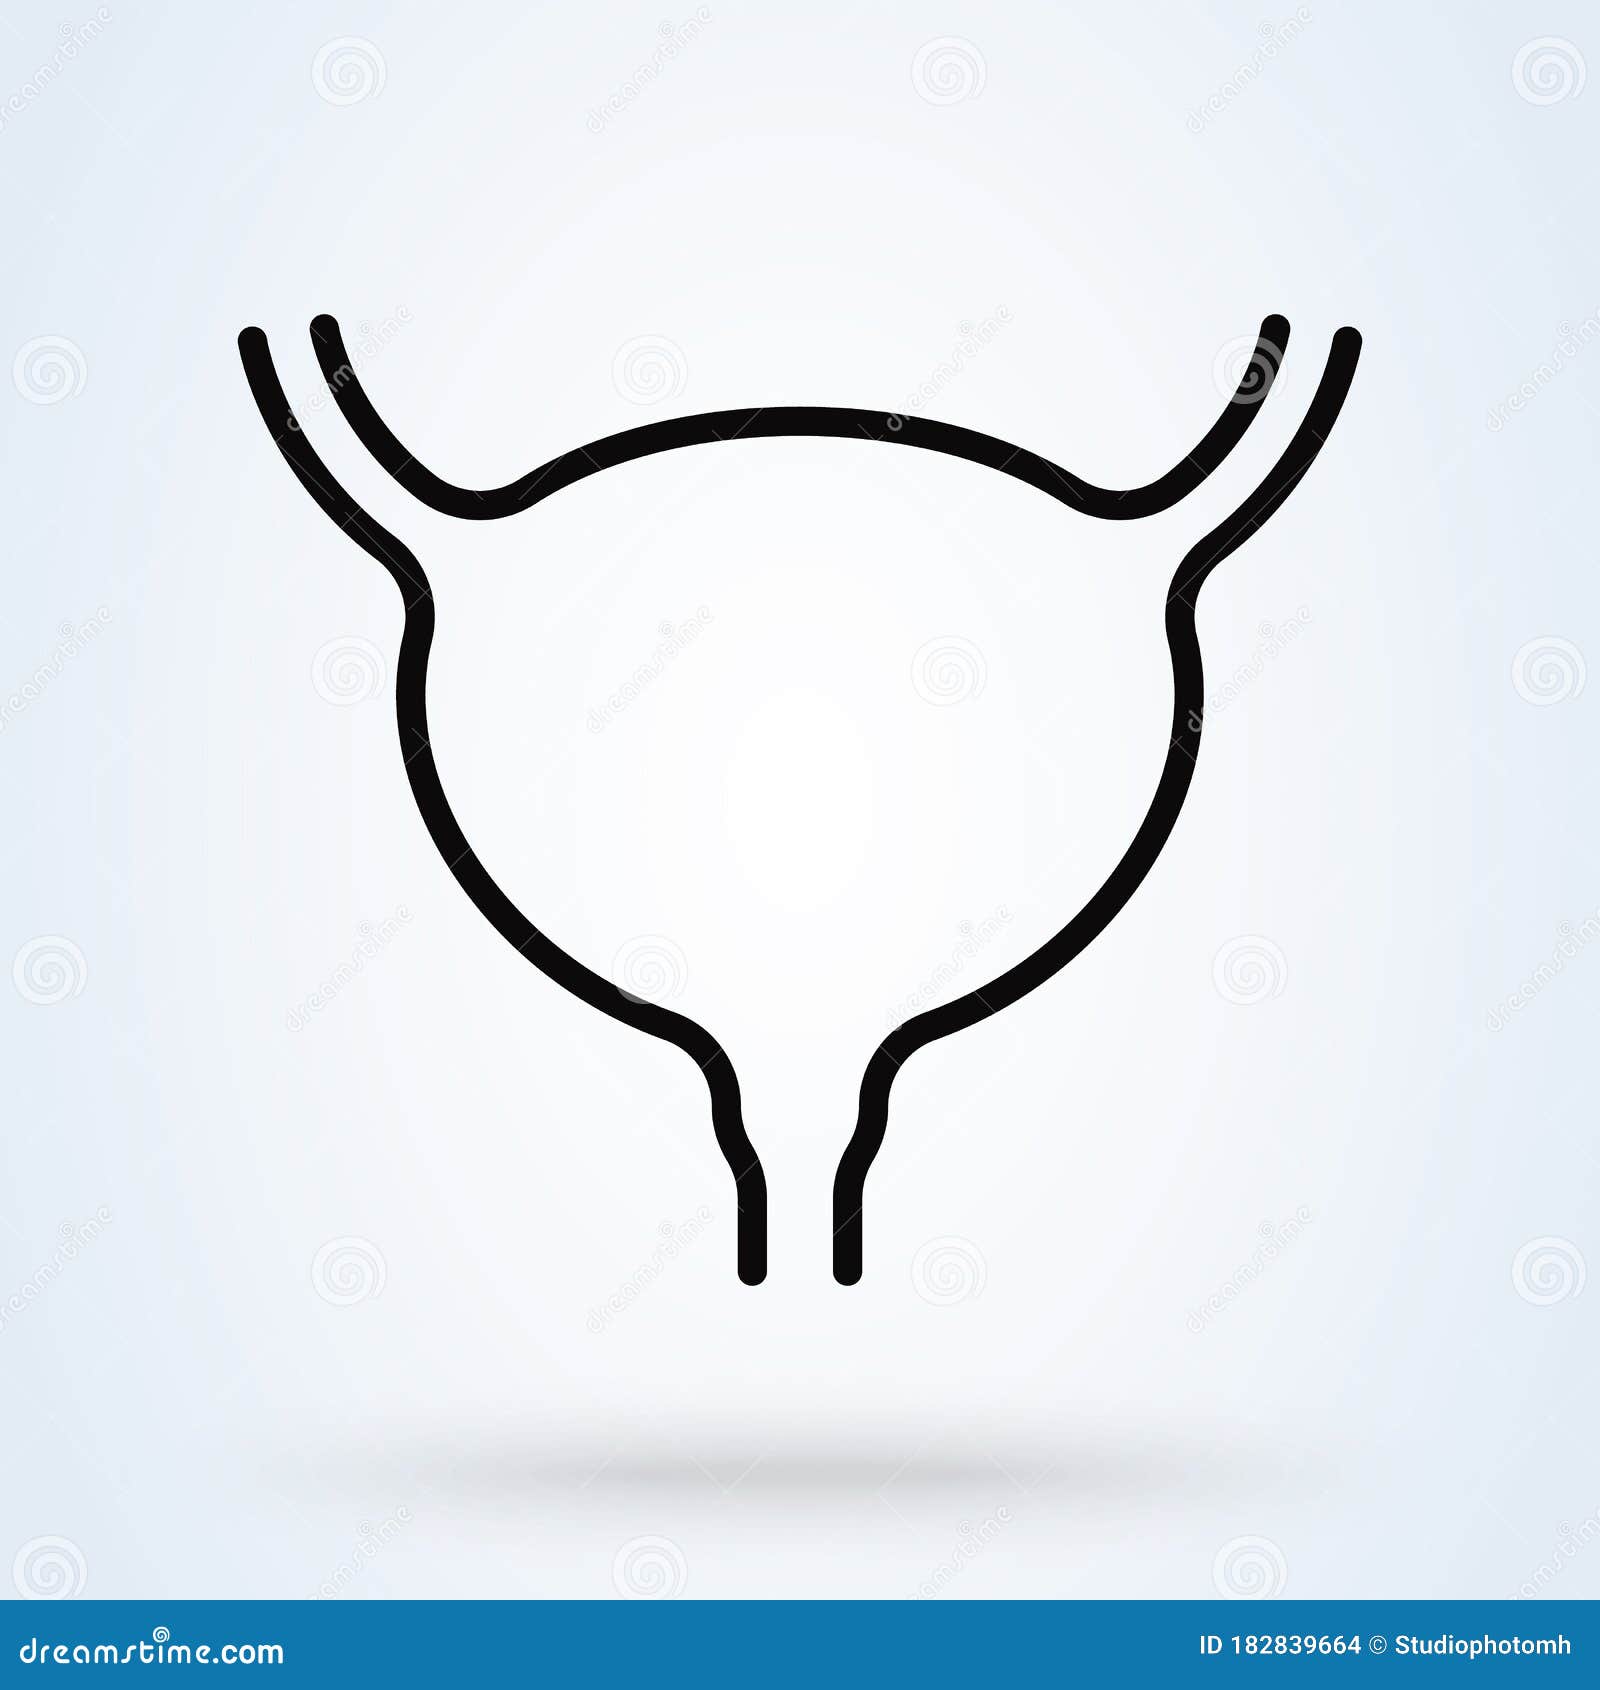 Vejiga Urinaria Humana Con Ureters Y Uretra Ilustración Vectorial